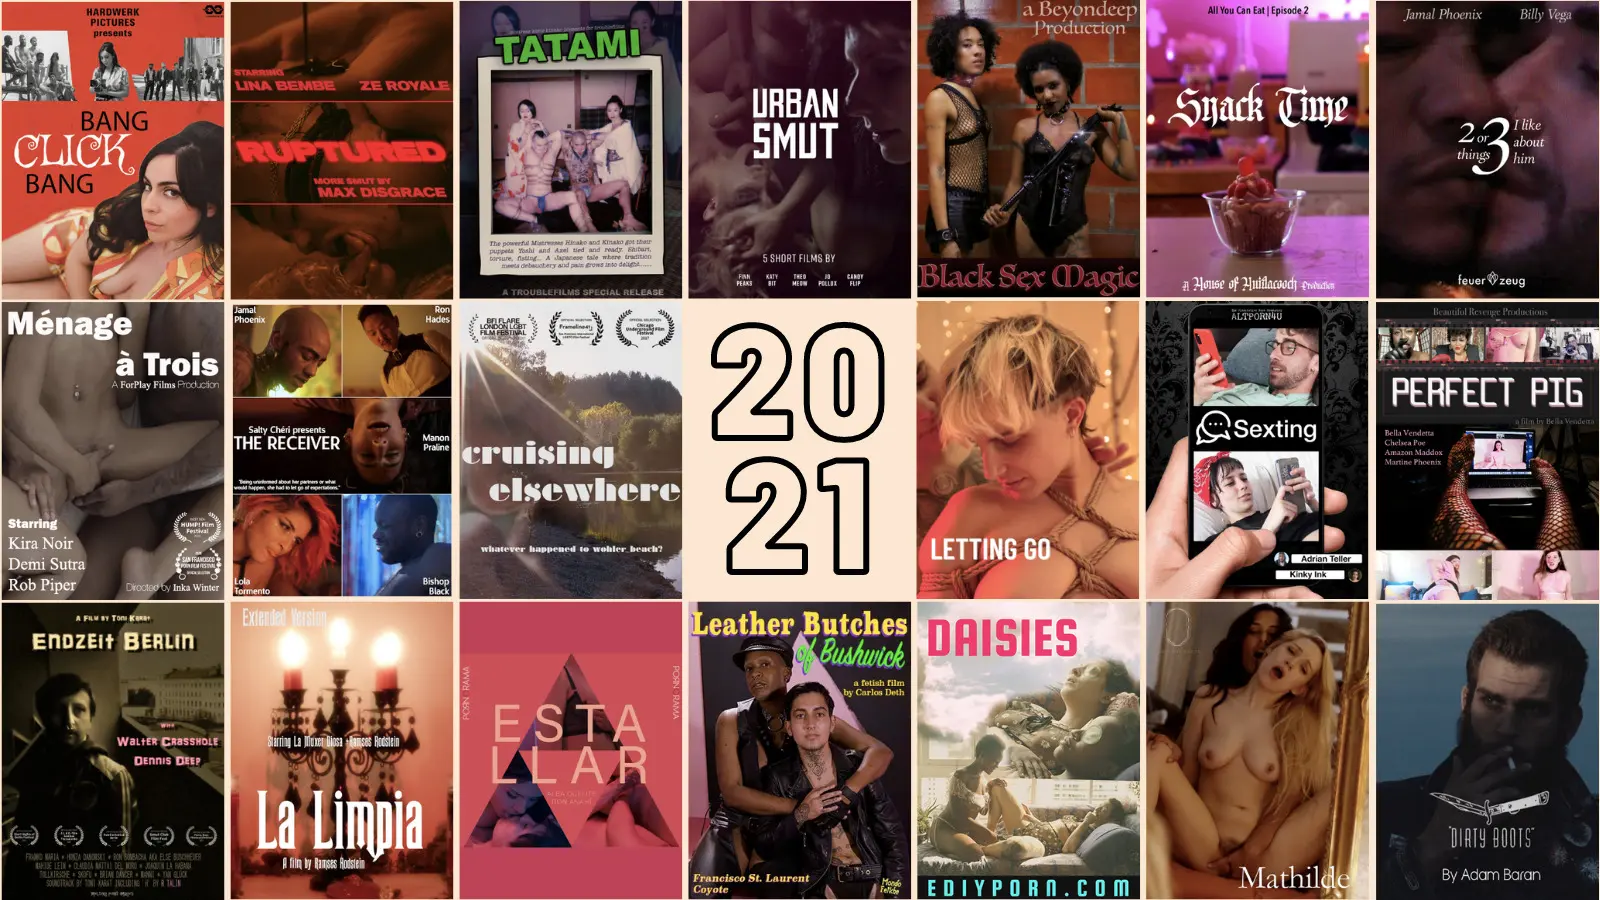 25+hd uncut full vintage erotic drama movies